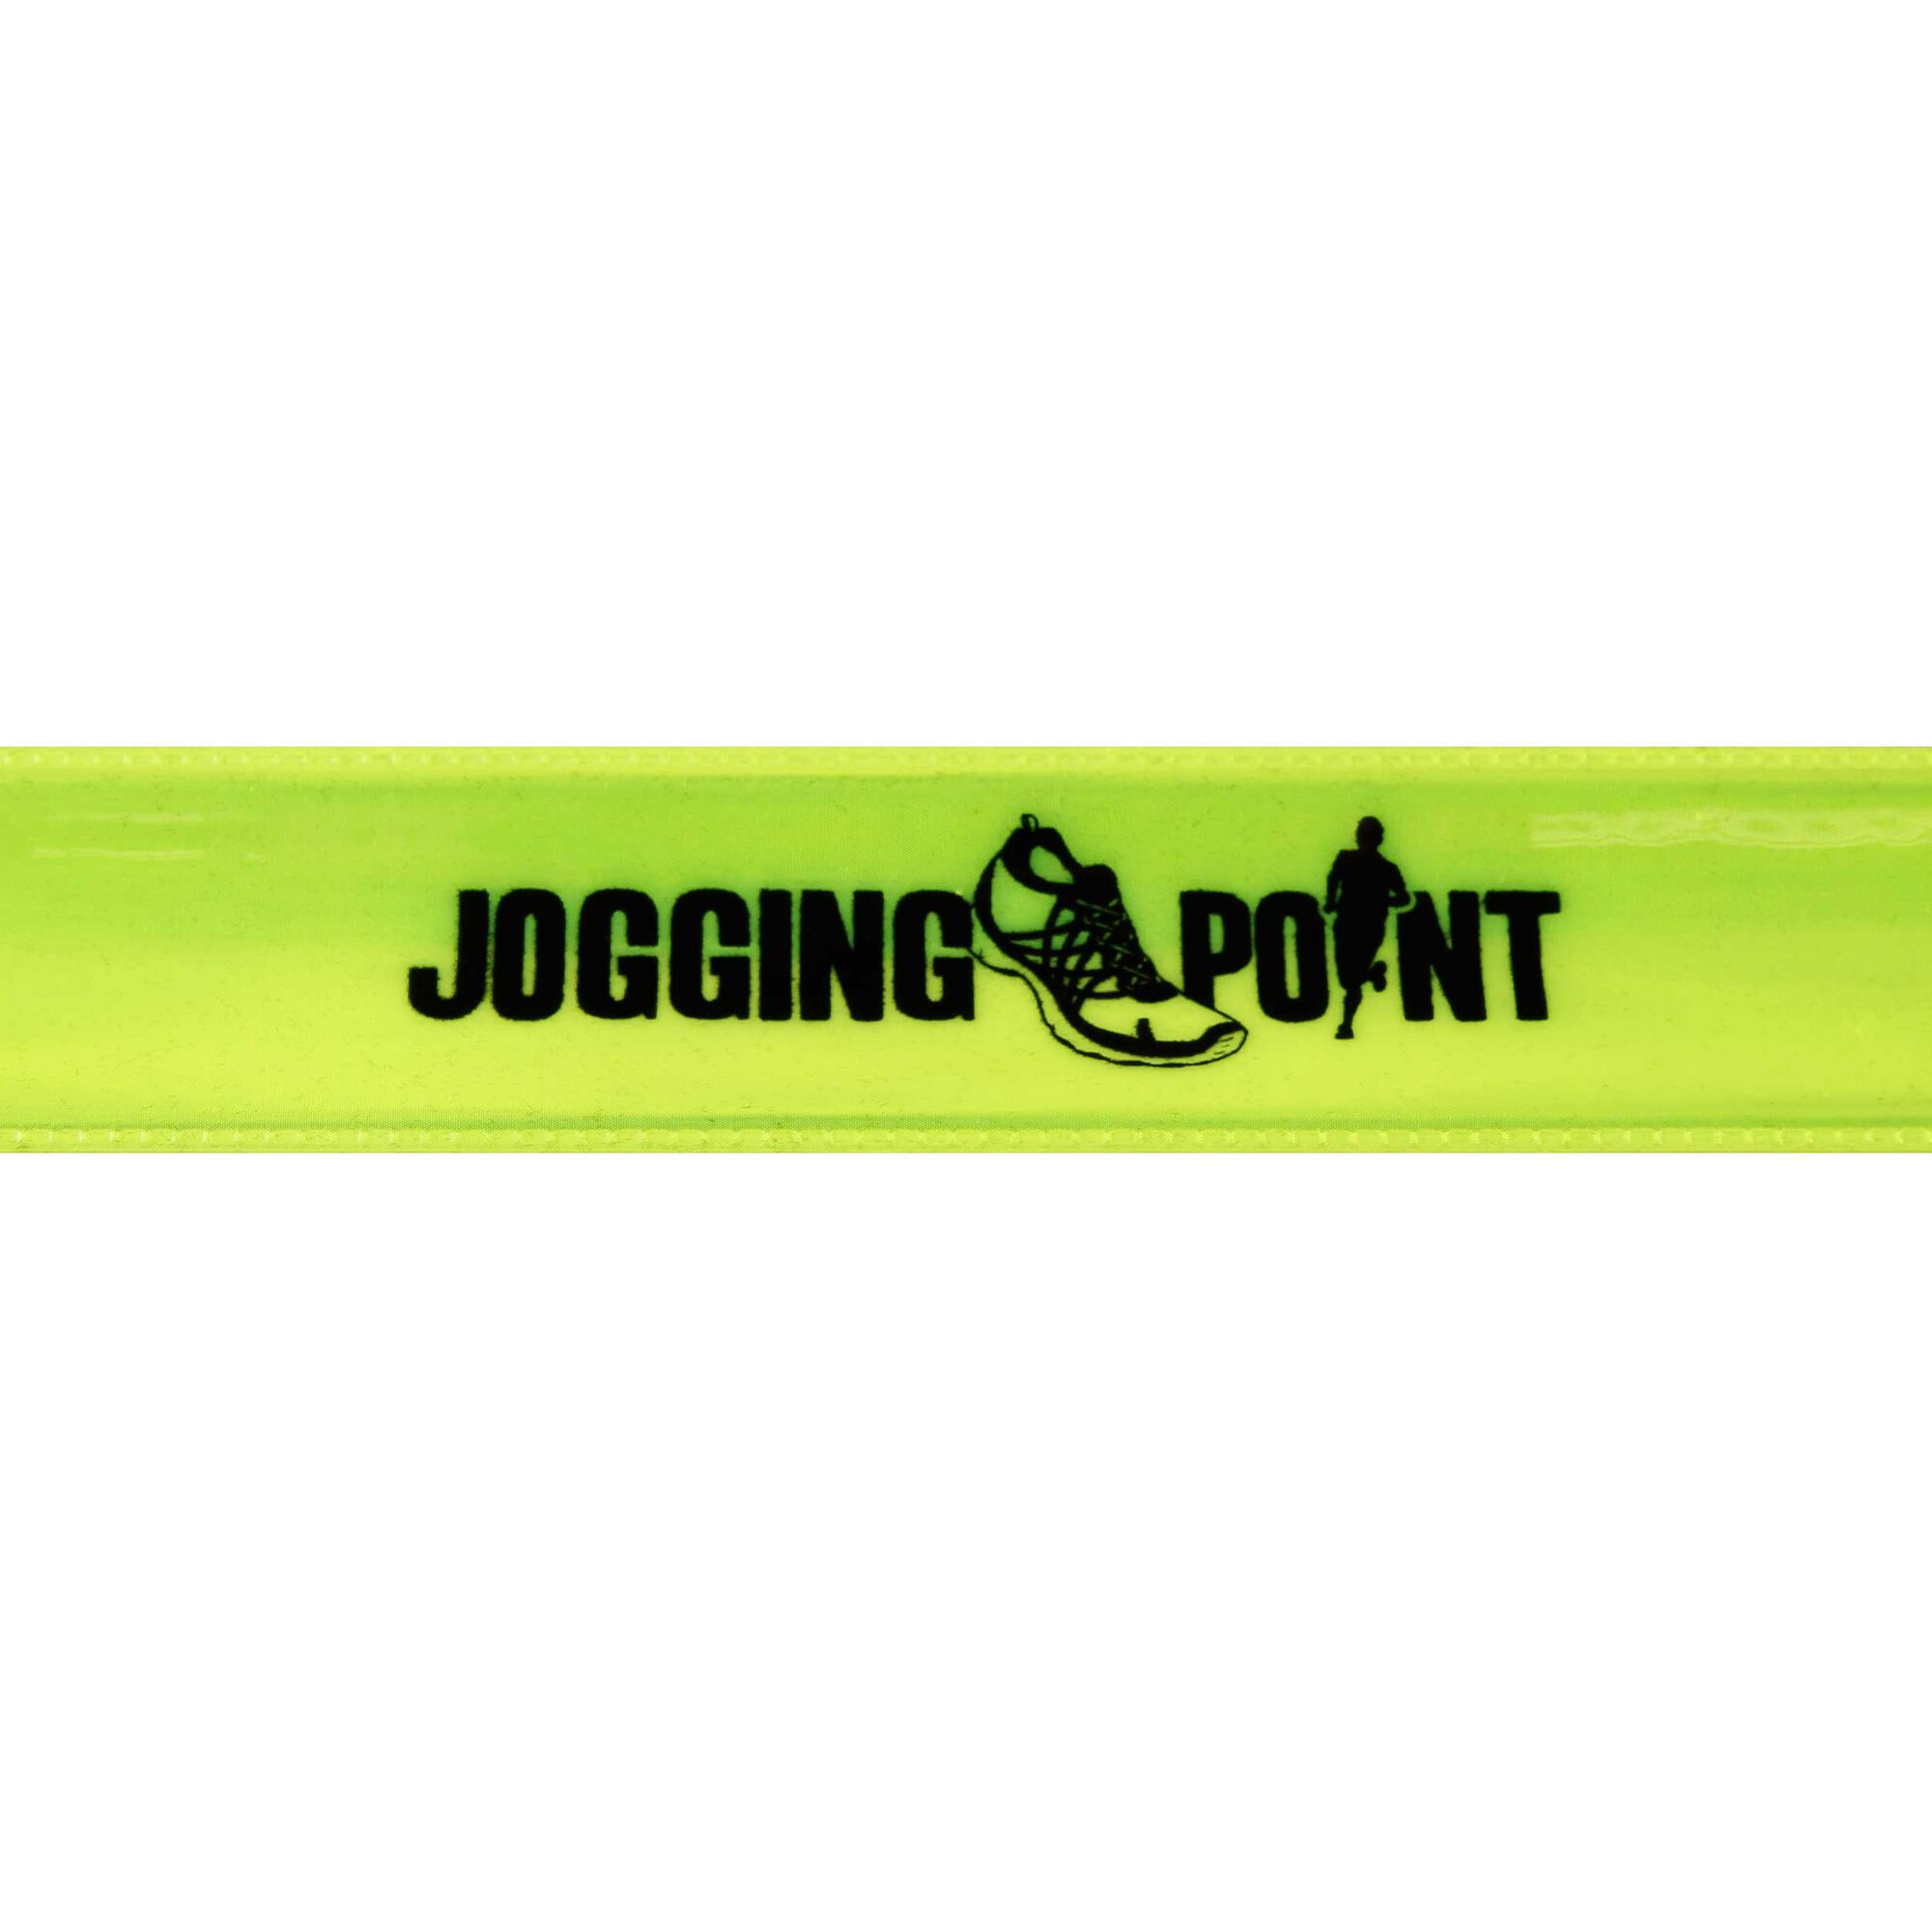 Jogging-Point Reflektor Slapband Neongrün online kaufen